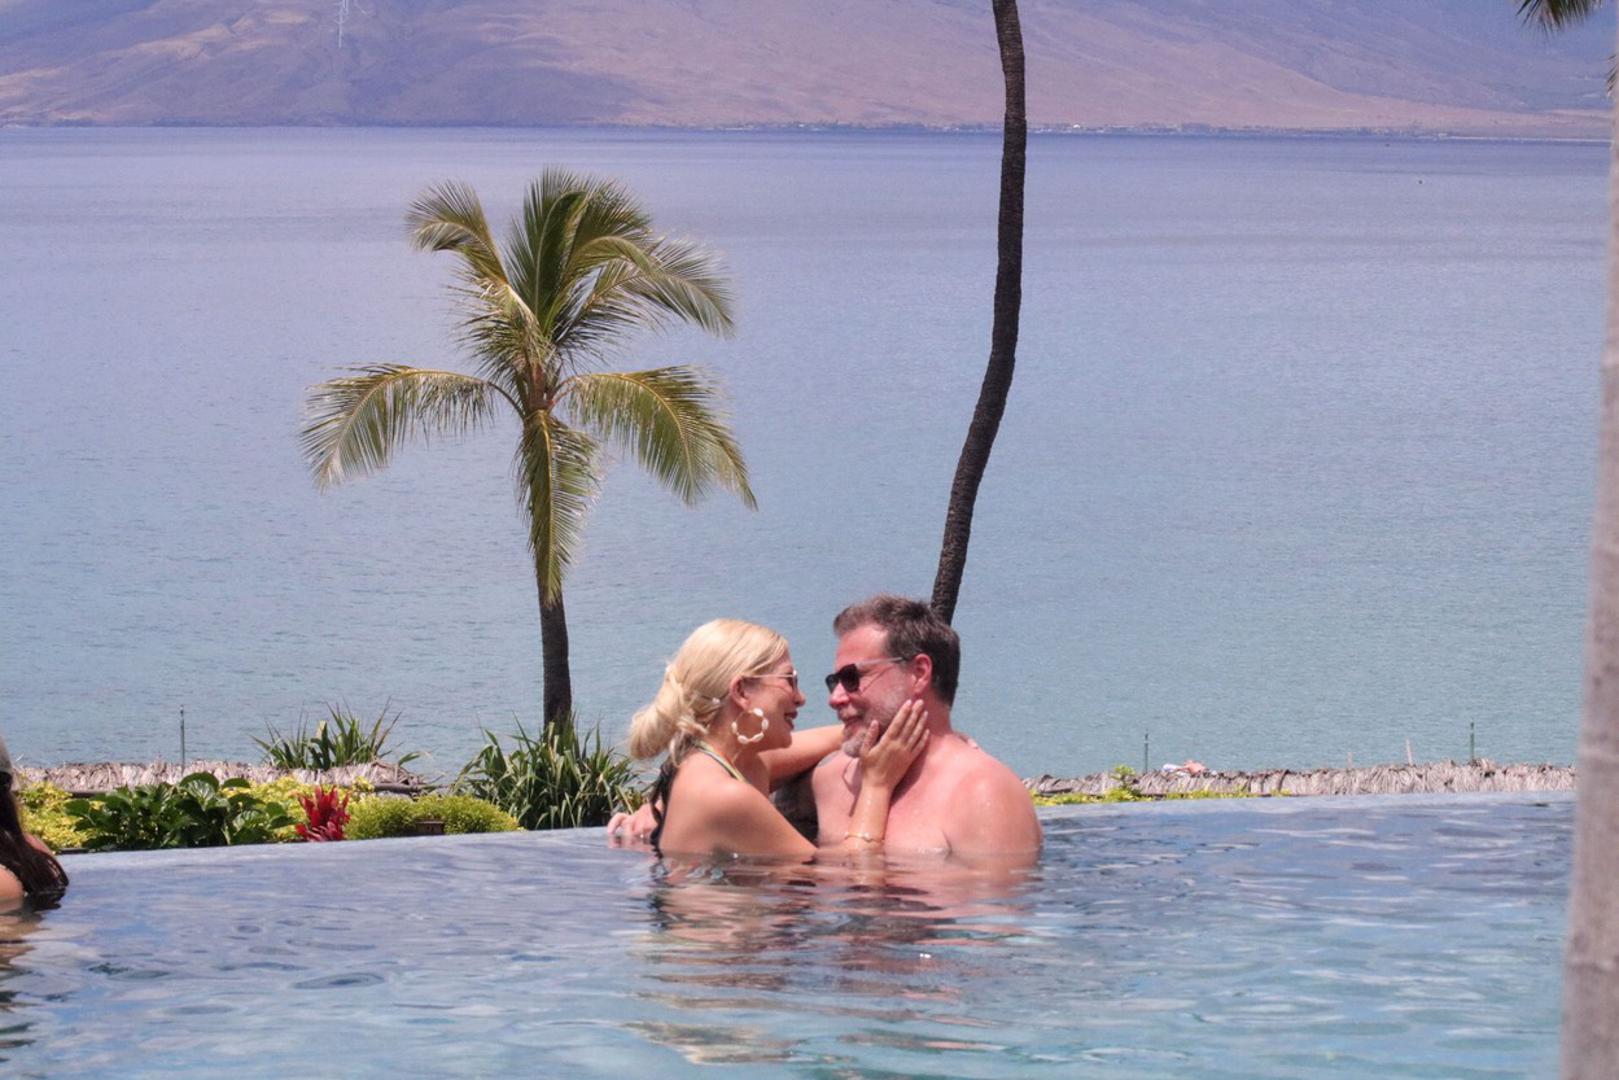 Potvrđuju to i  fotografije na kojima Tori i Dean u bazenu izmjenjuju nježnosti u bazenu tijekom godišnjeg odmora na Havajima. 